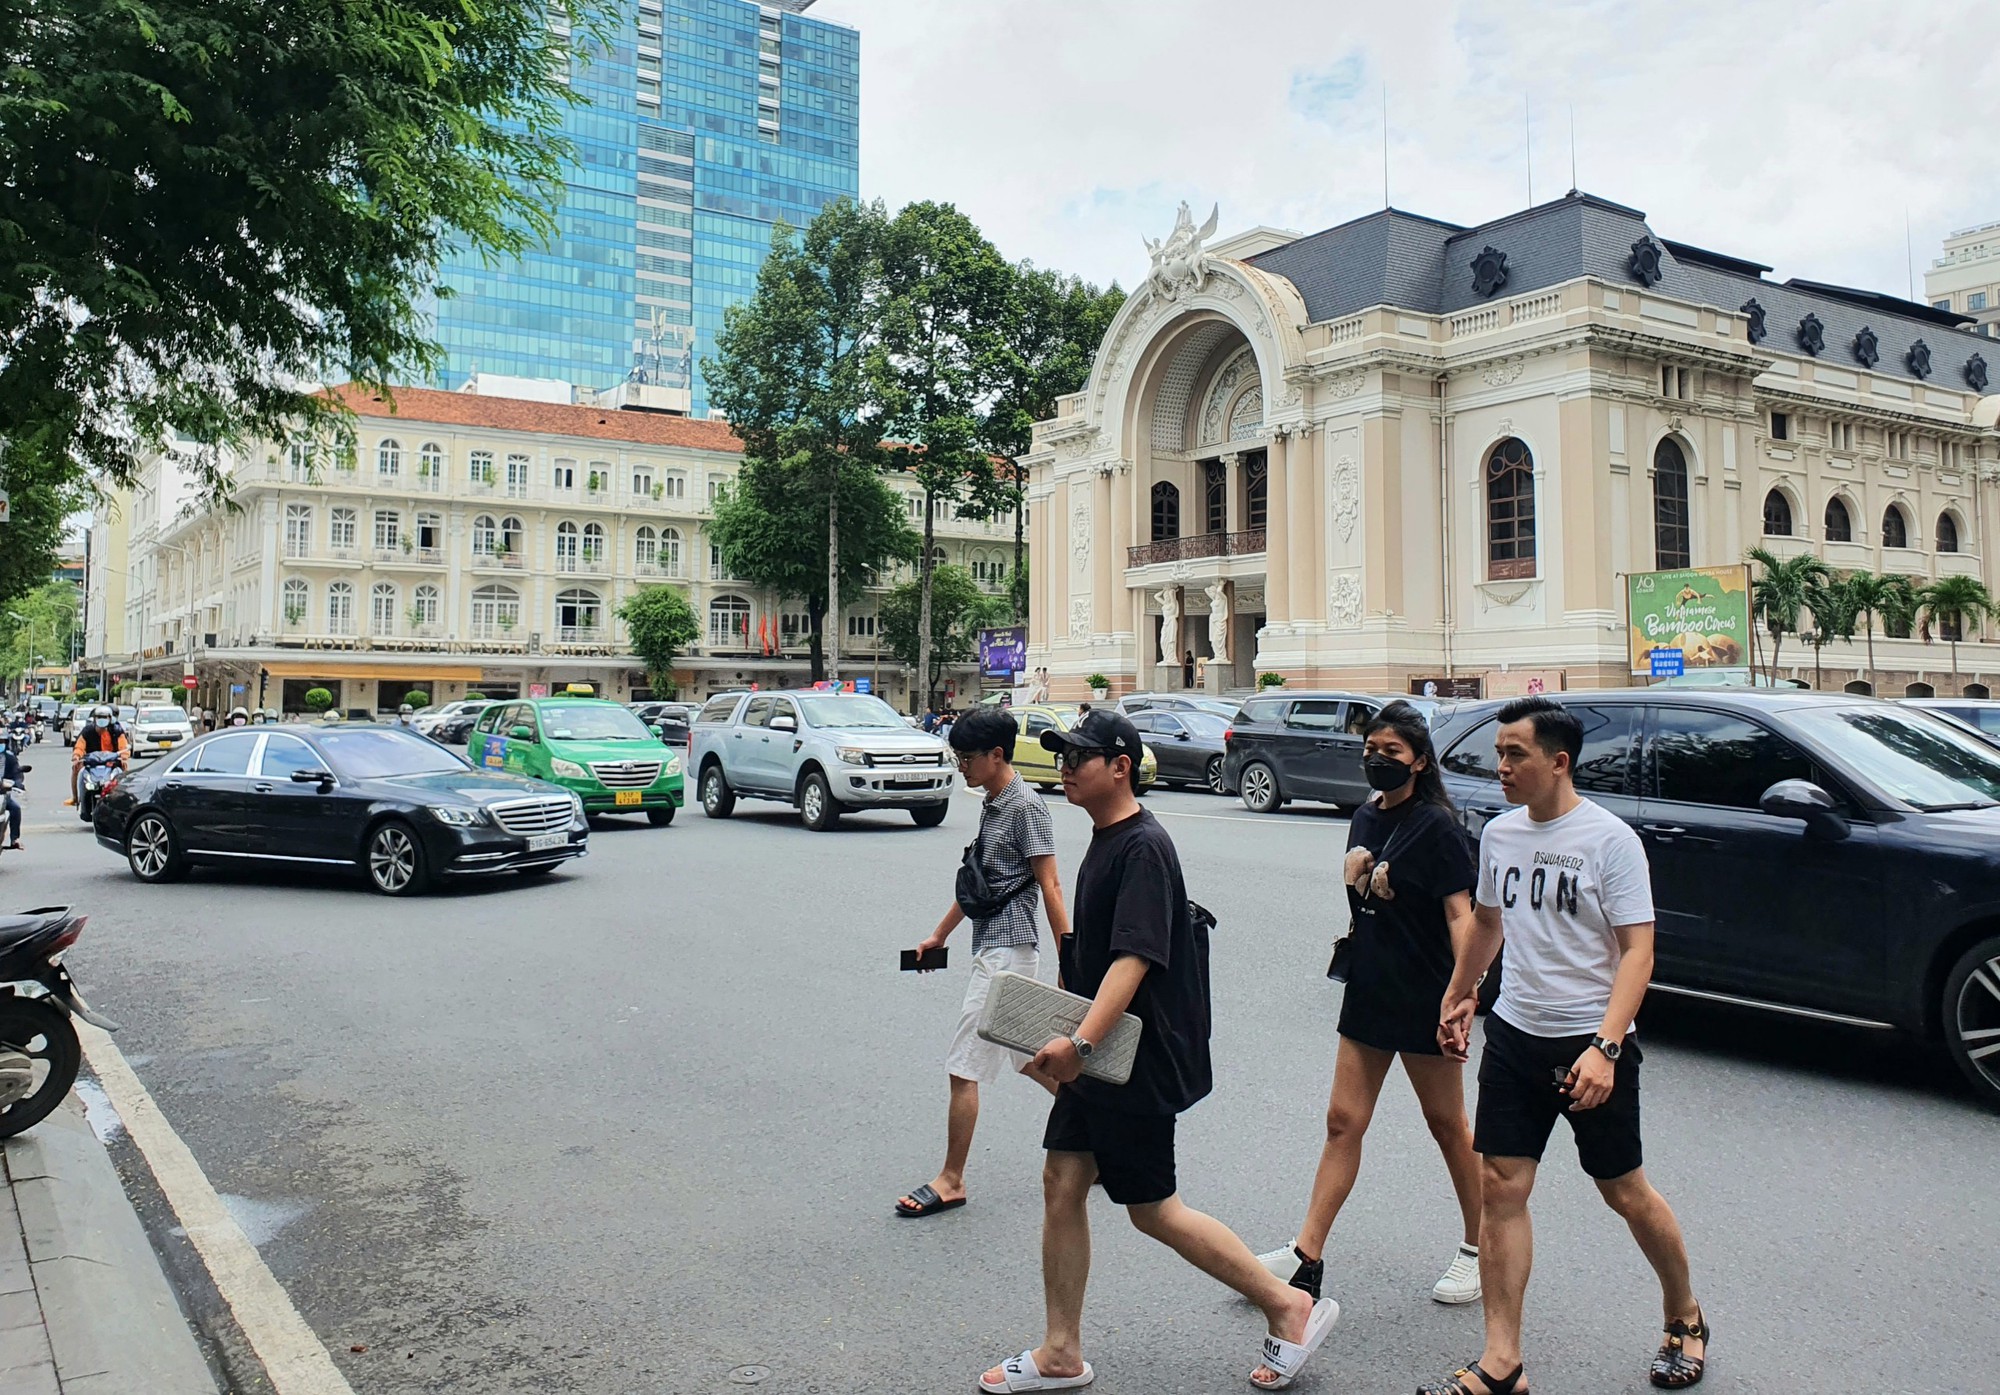 Hàng hiệu xa xỉ, khách sạn 5 sao, thiên đường mua sắm chen nhau trên con đường dát vàng ở Sài Gòn - Ảnh 2.